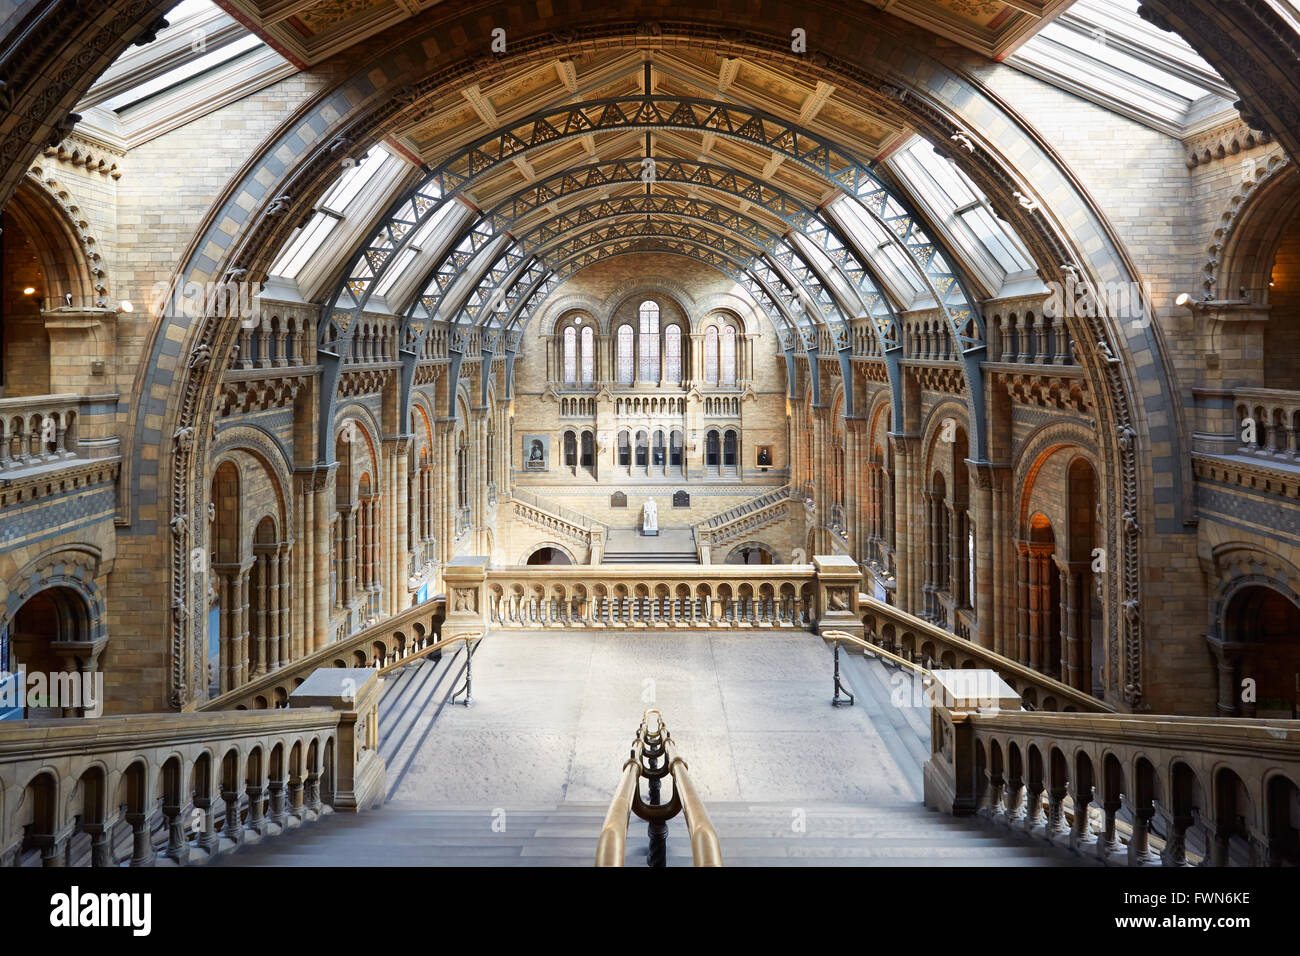 Musée d'histoire naturelle, de l'intérieur avec escalier vue arcade, personne à Londres Banque D'Images